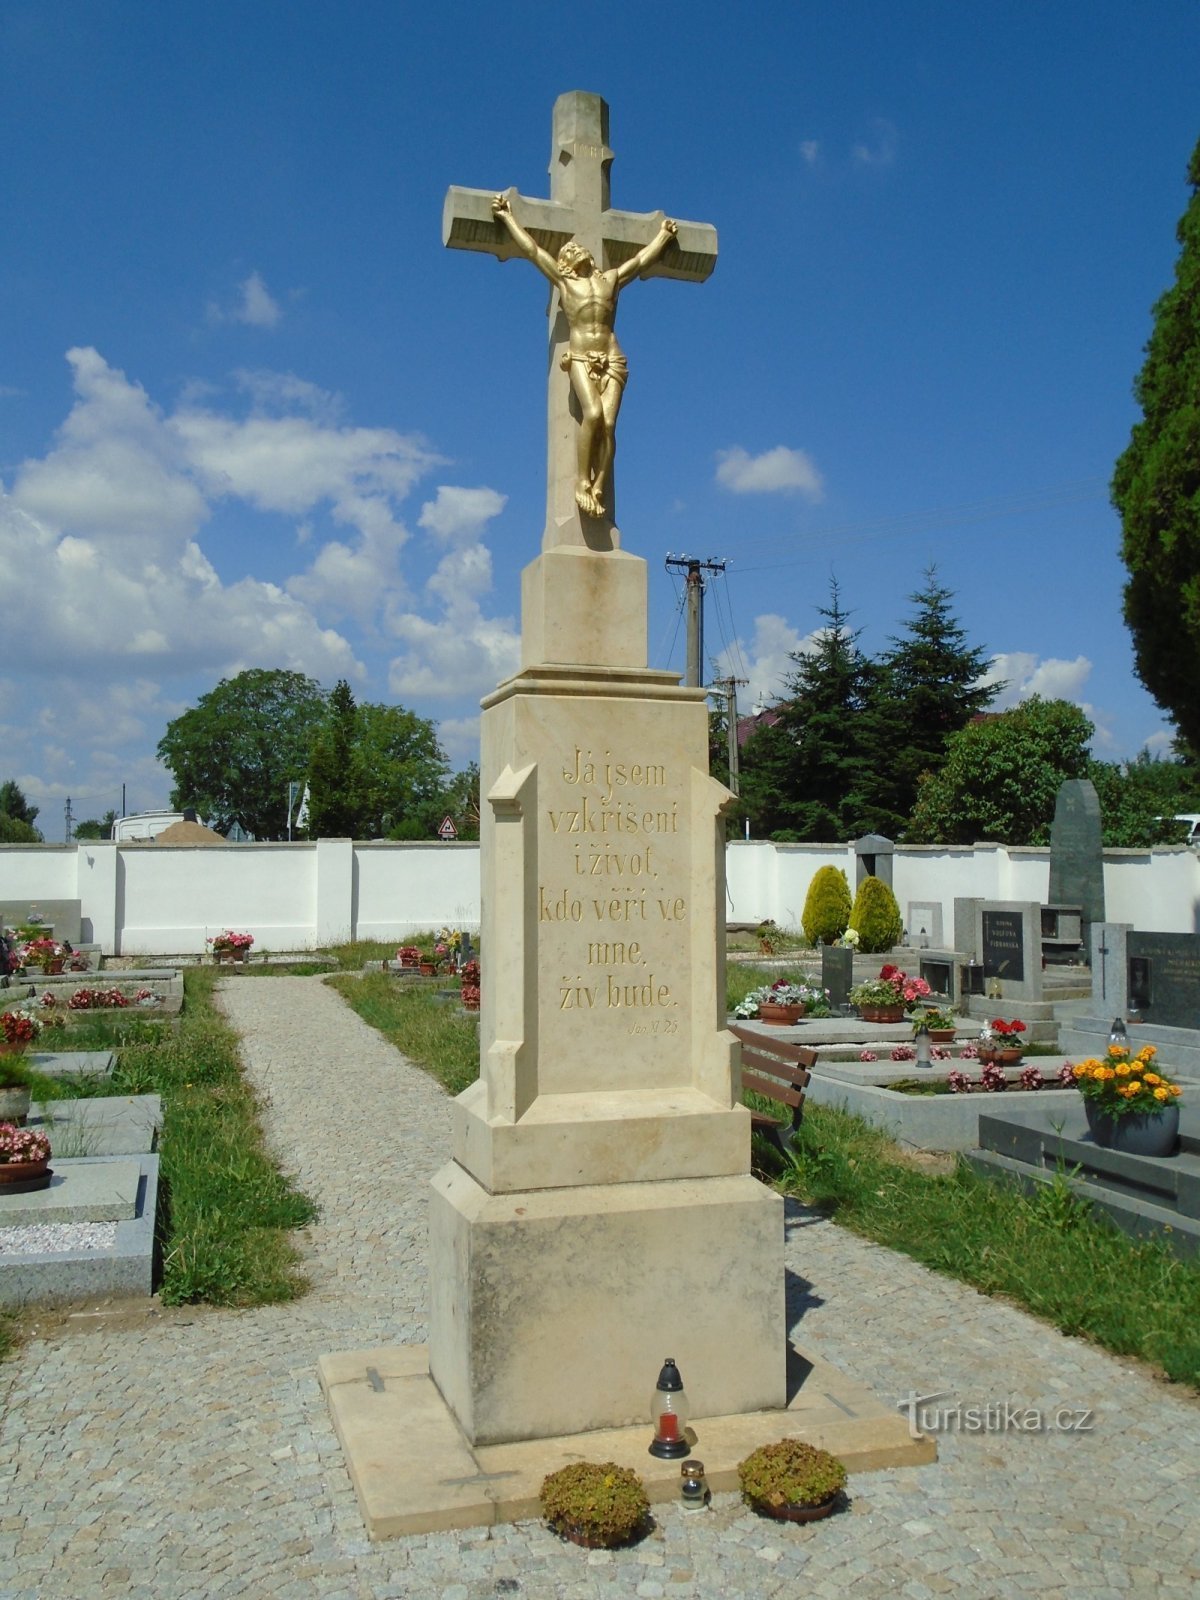 Croce del cimitero (Santi, 20.6.2018/XNUMX/XNUMX)